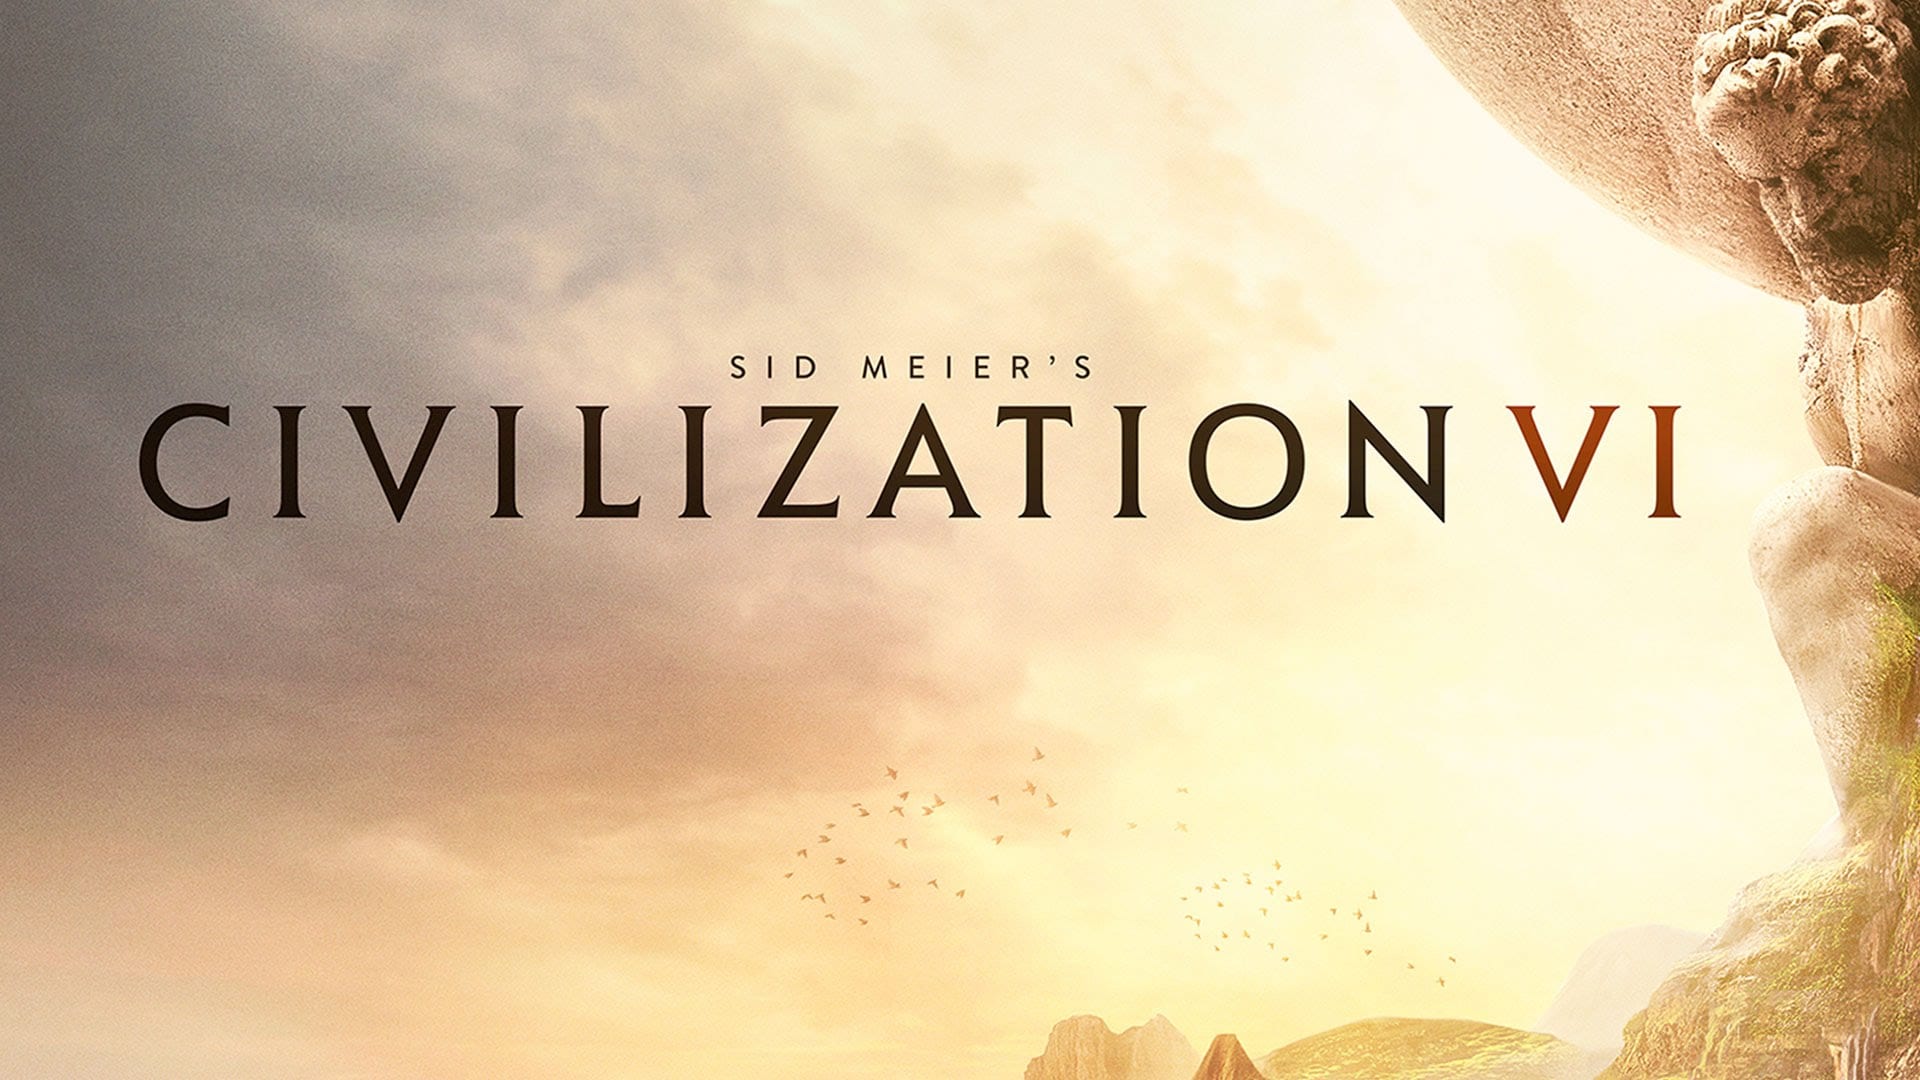 Annunciato Civilization VI